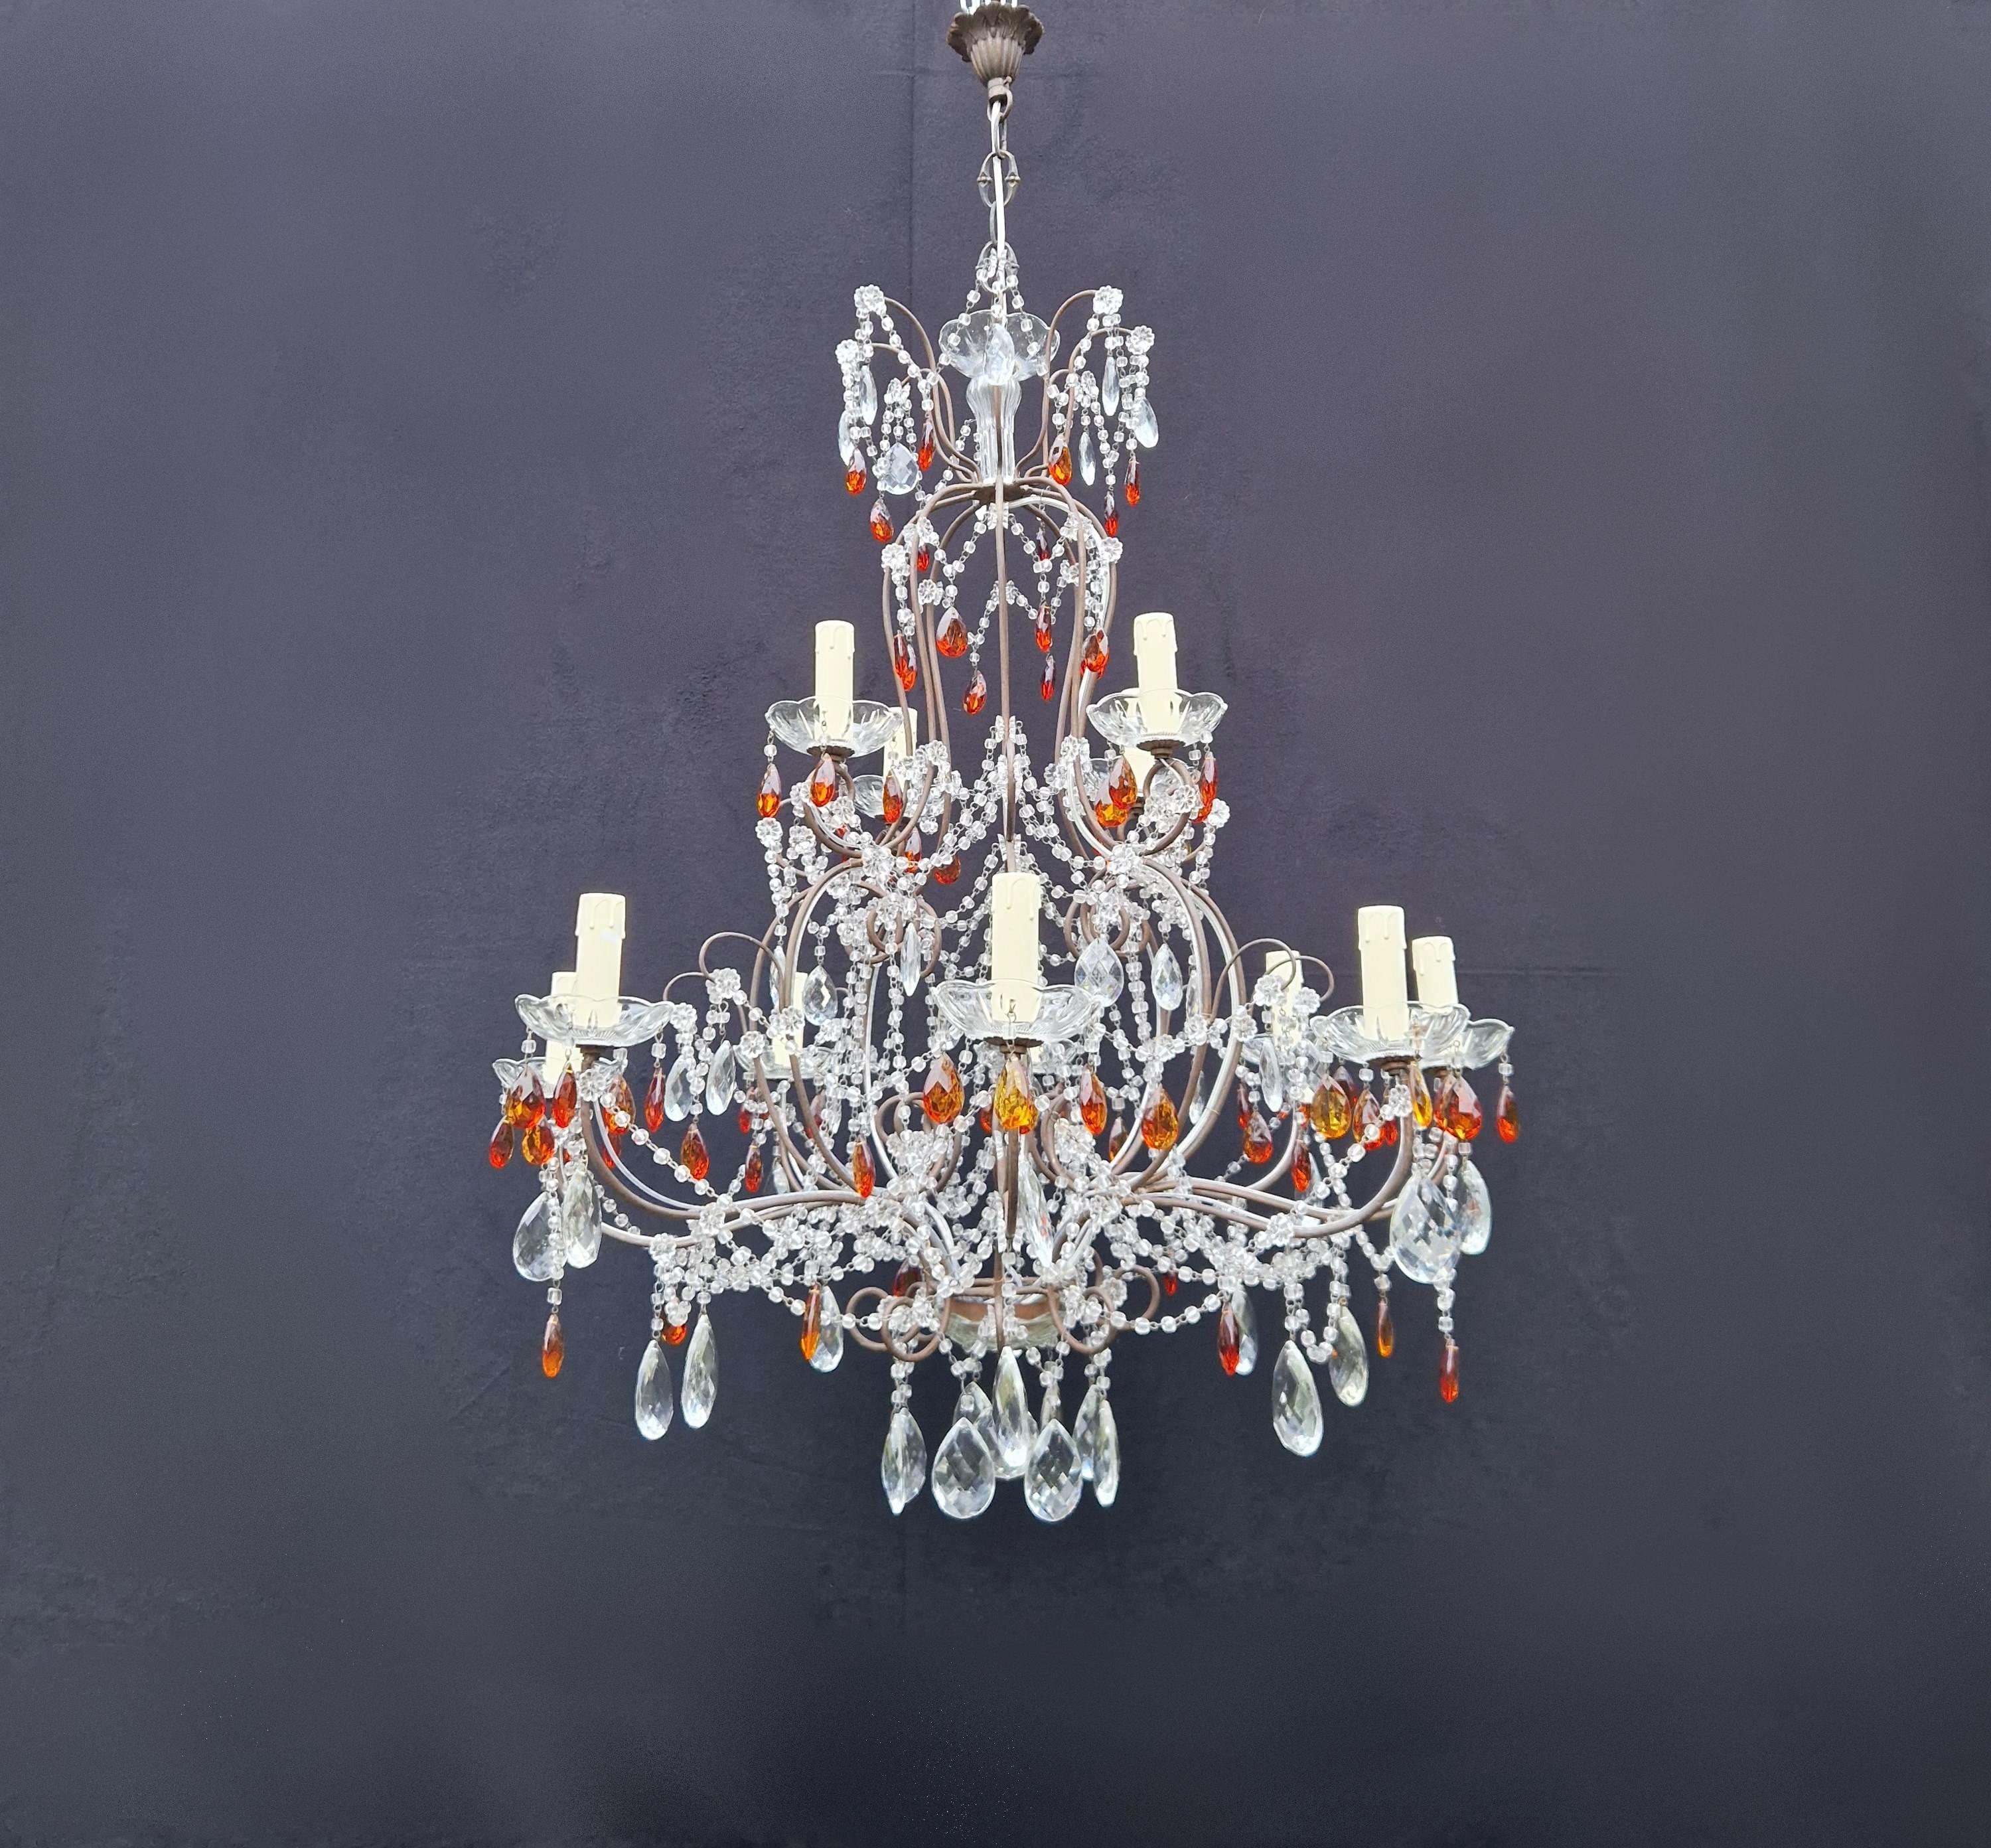 Amber Crystal Antique Chandelier Ceiling Florentiner Lustre Art Nouveau For Sale 2